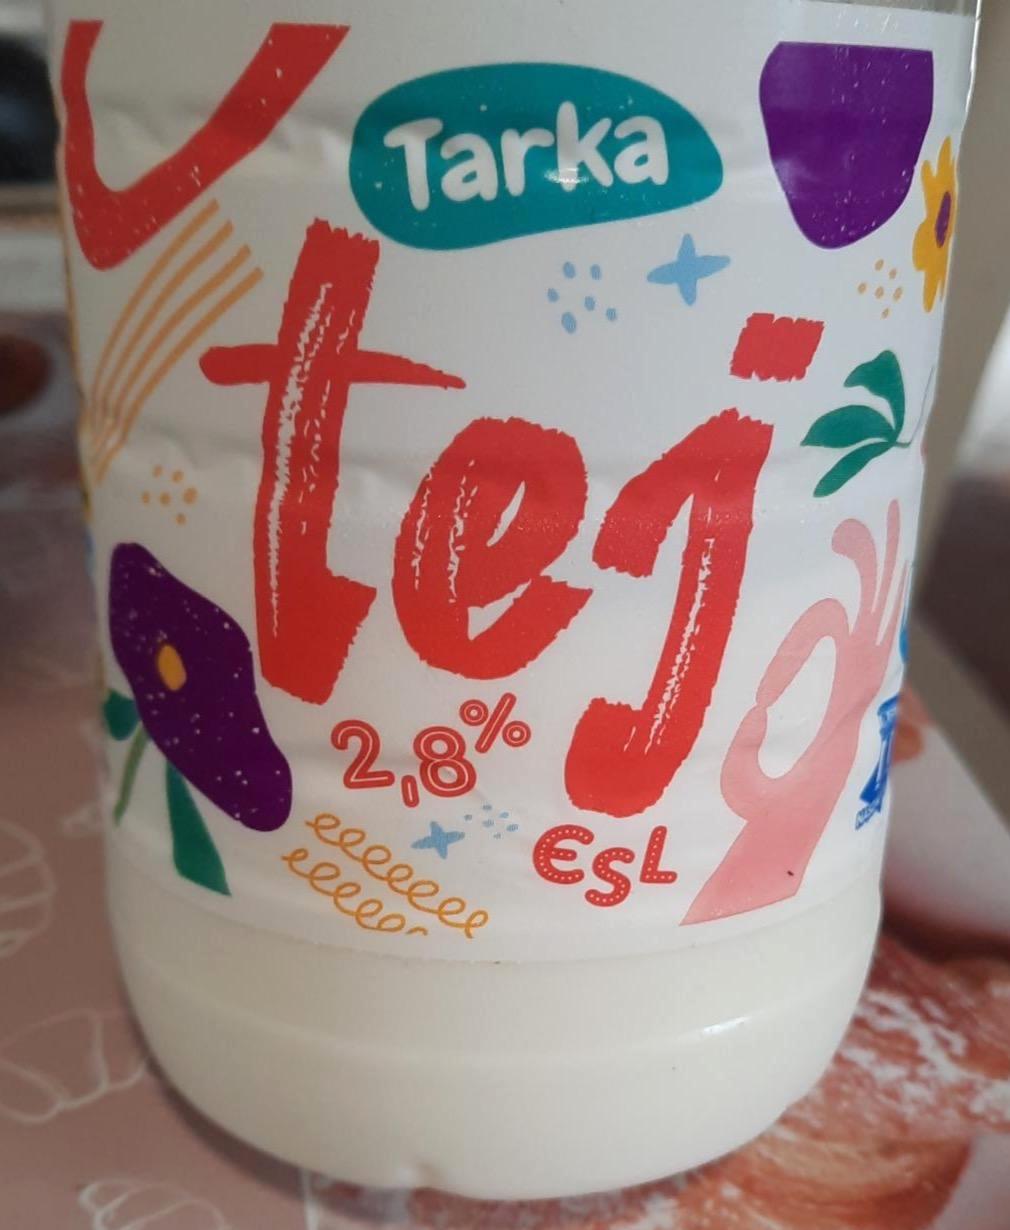 Képek - Félzsíros tej 2,8% ESL Tarka